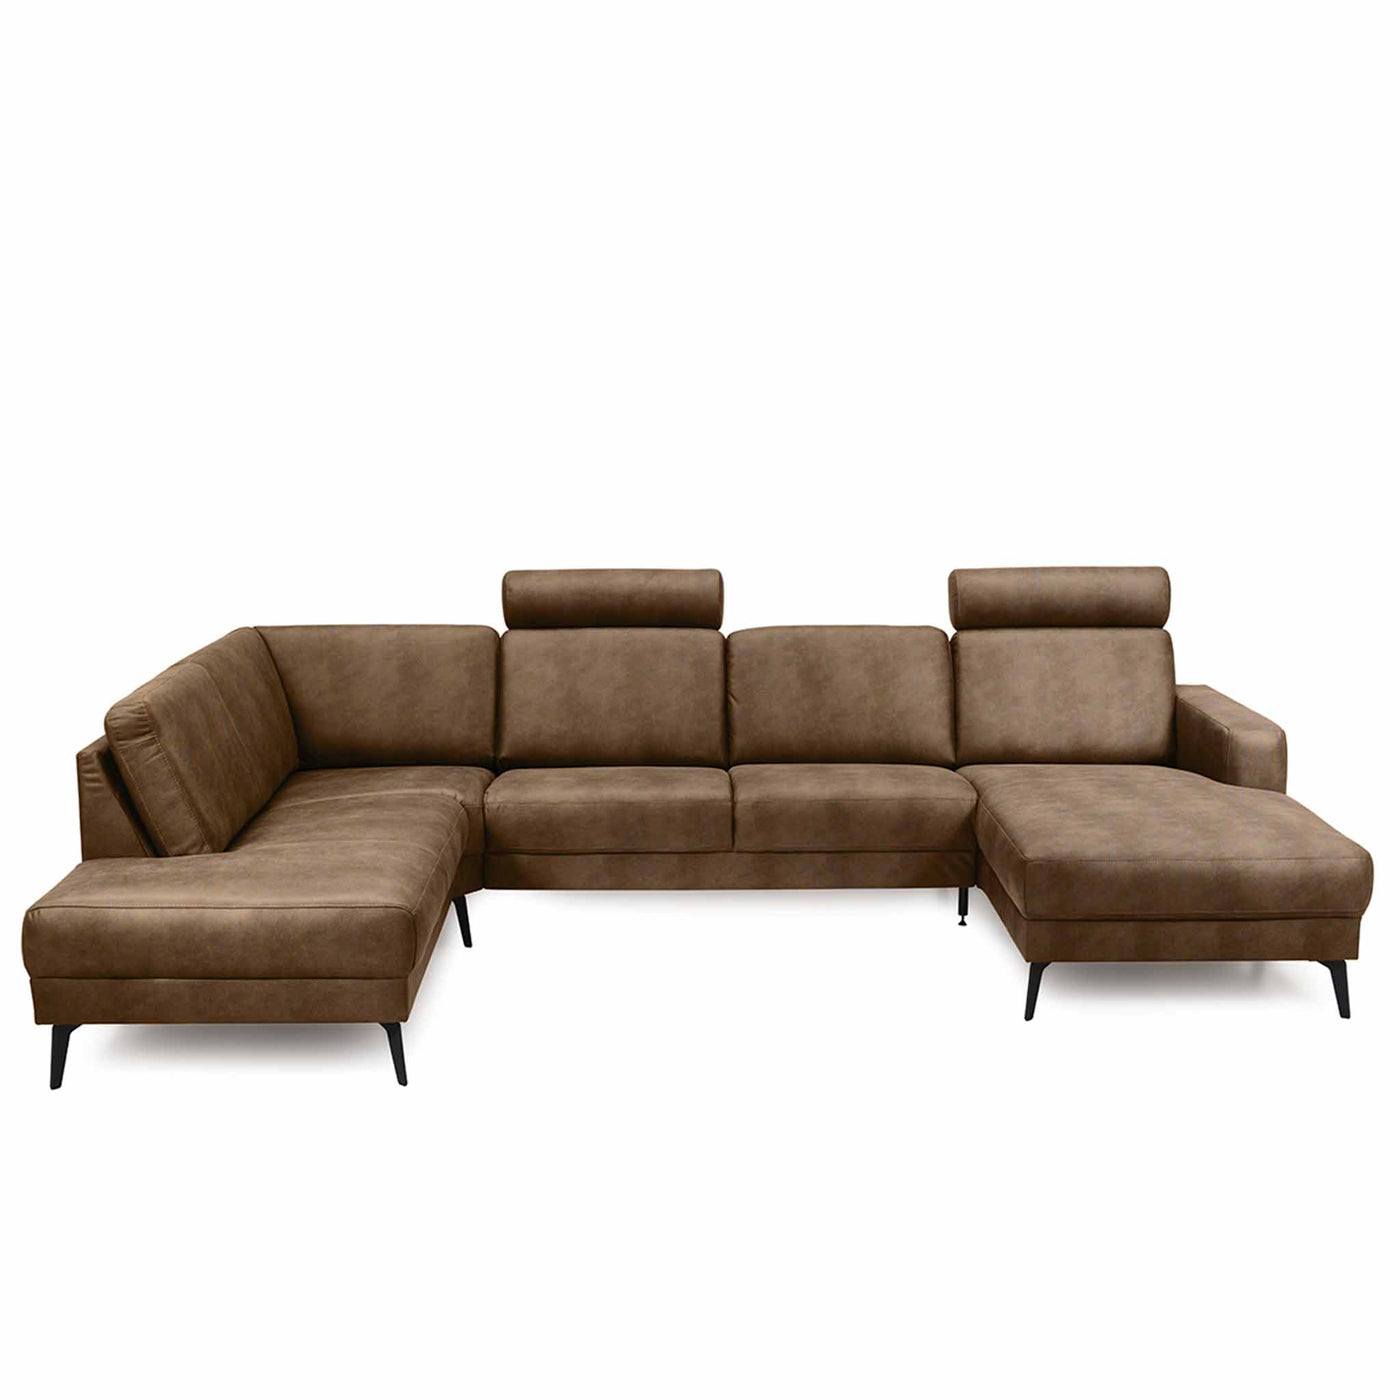 City U-sofa fra Hjort Knudsen med Kentucky stof i farve 2593 Cognac. Her højrevendt.